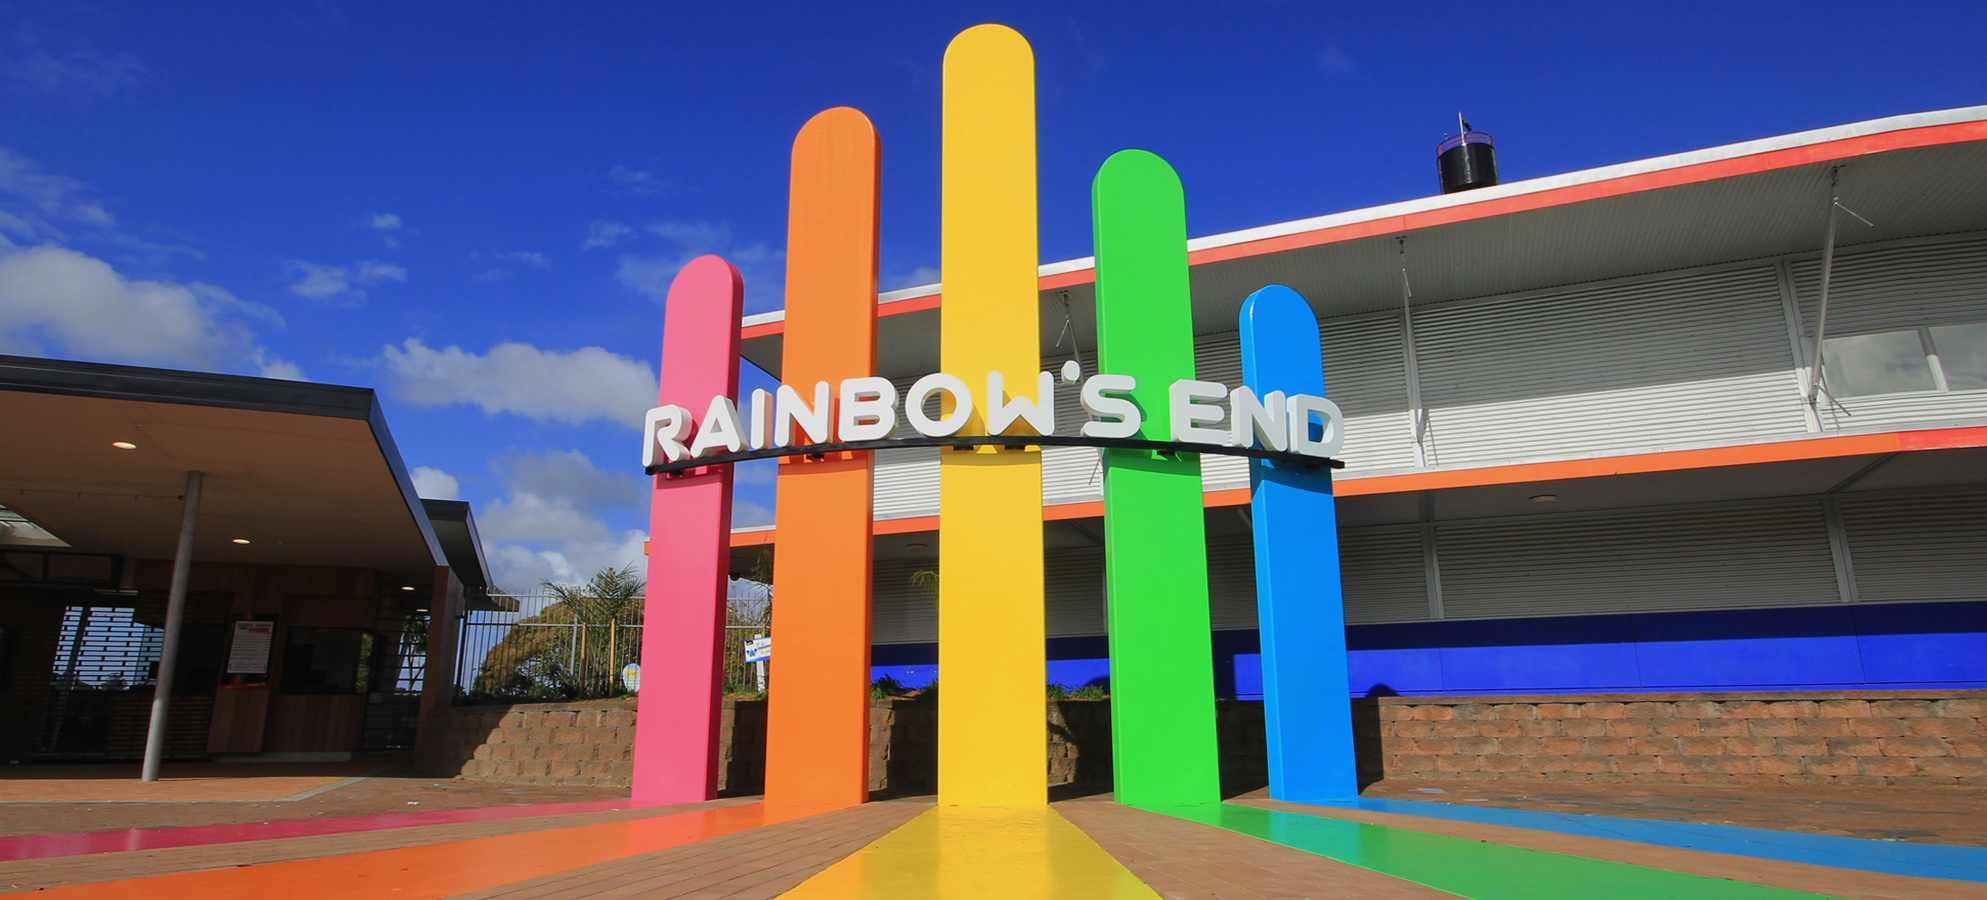 Gastblog Tim | Review Rainbow’s End in Nieuw Zeeland